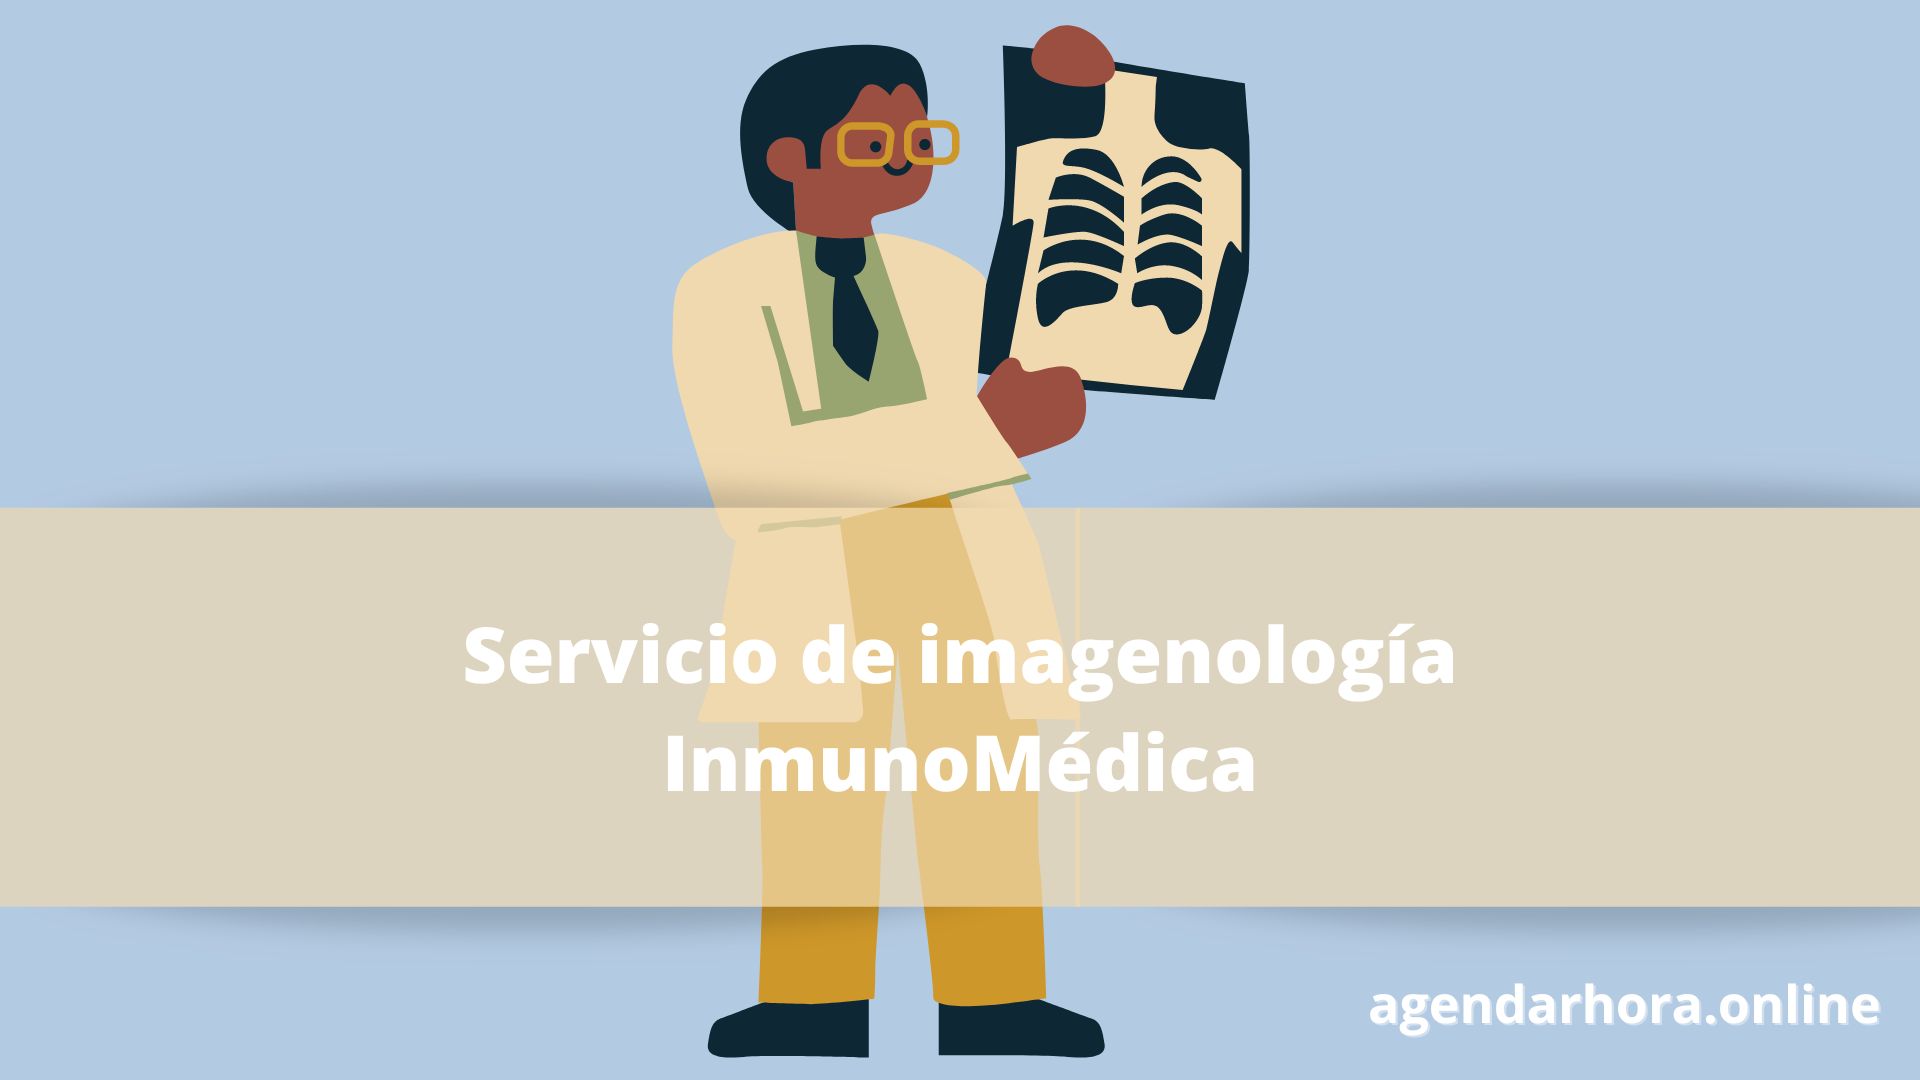 Servicio de imagenología InmunoMédica